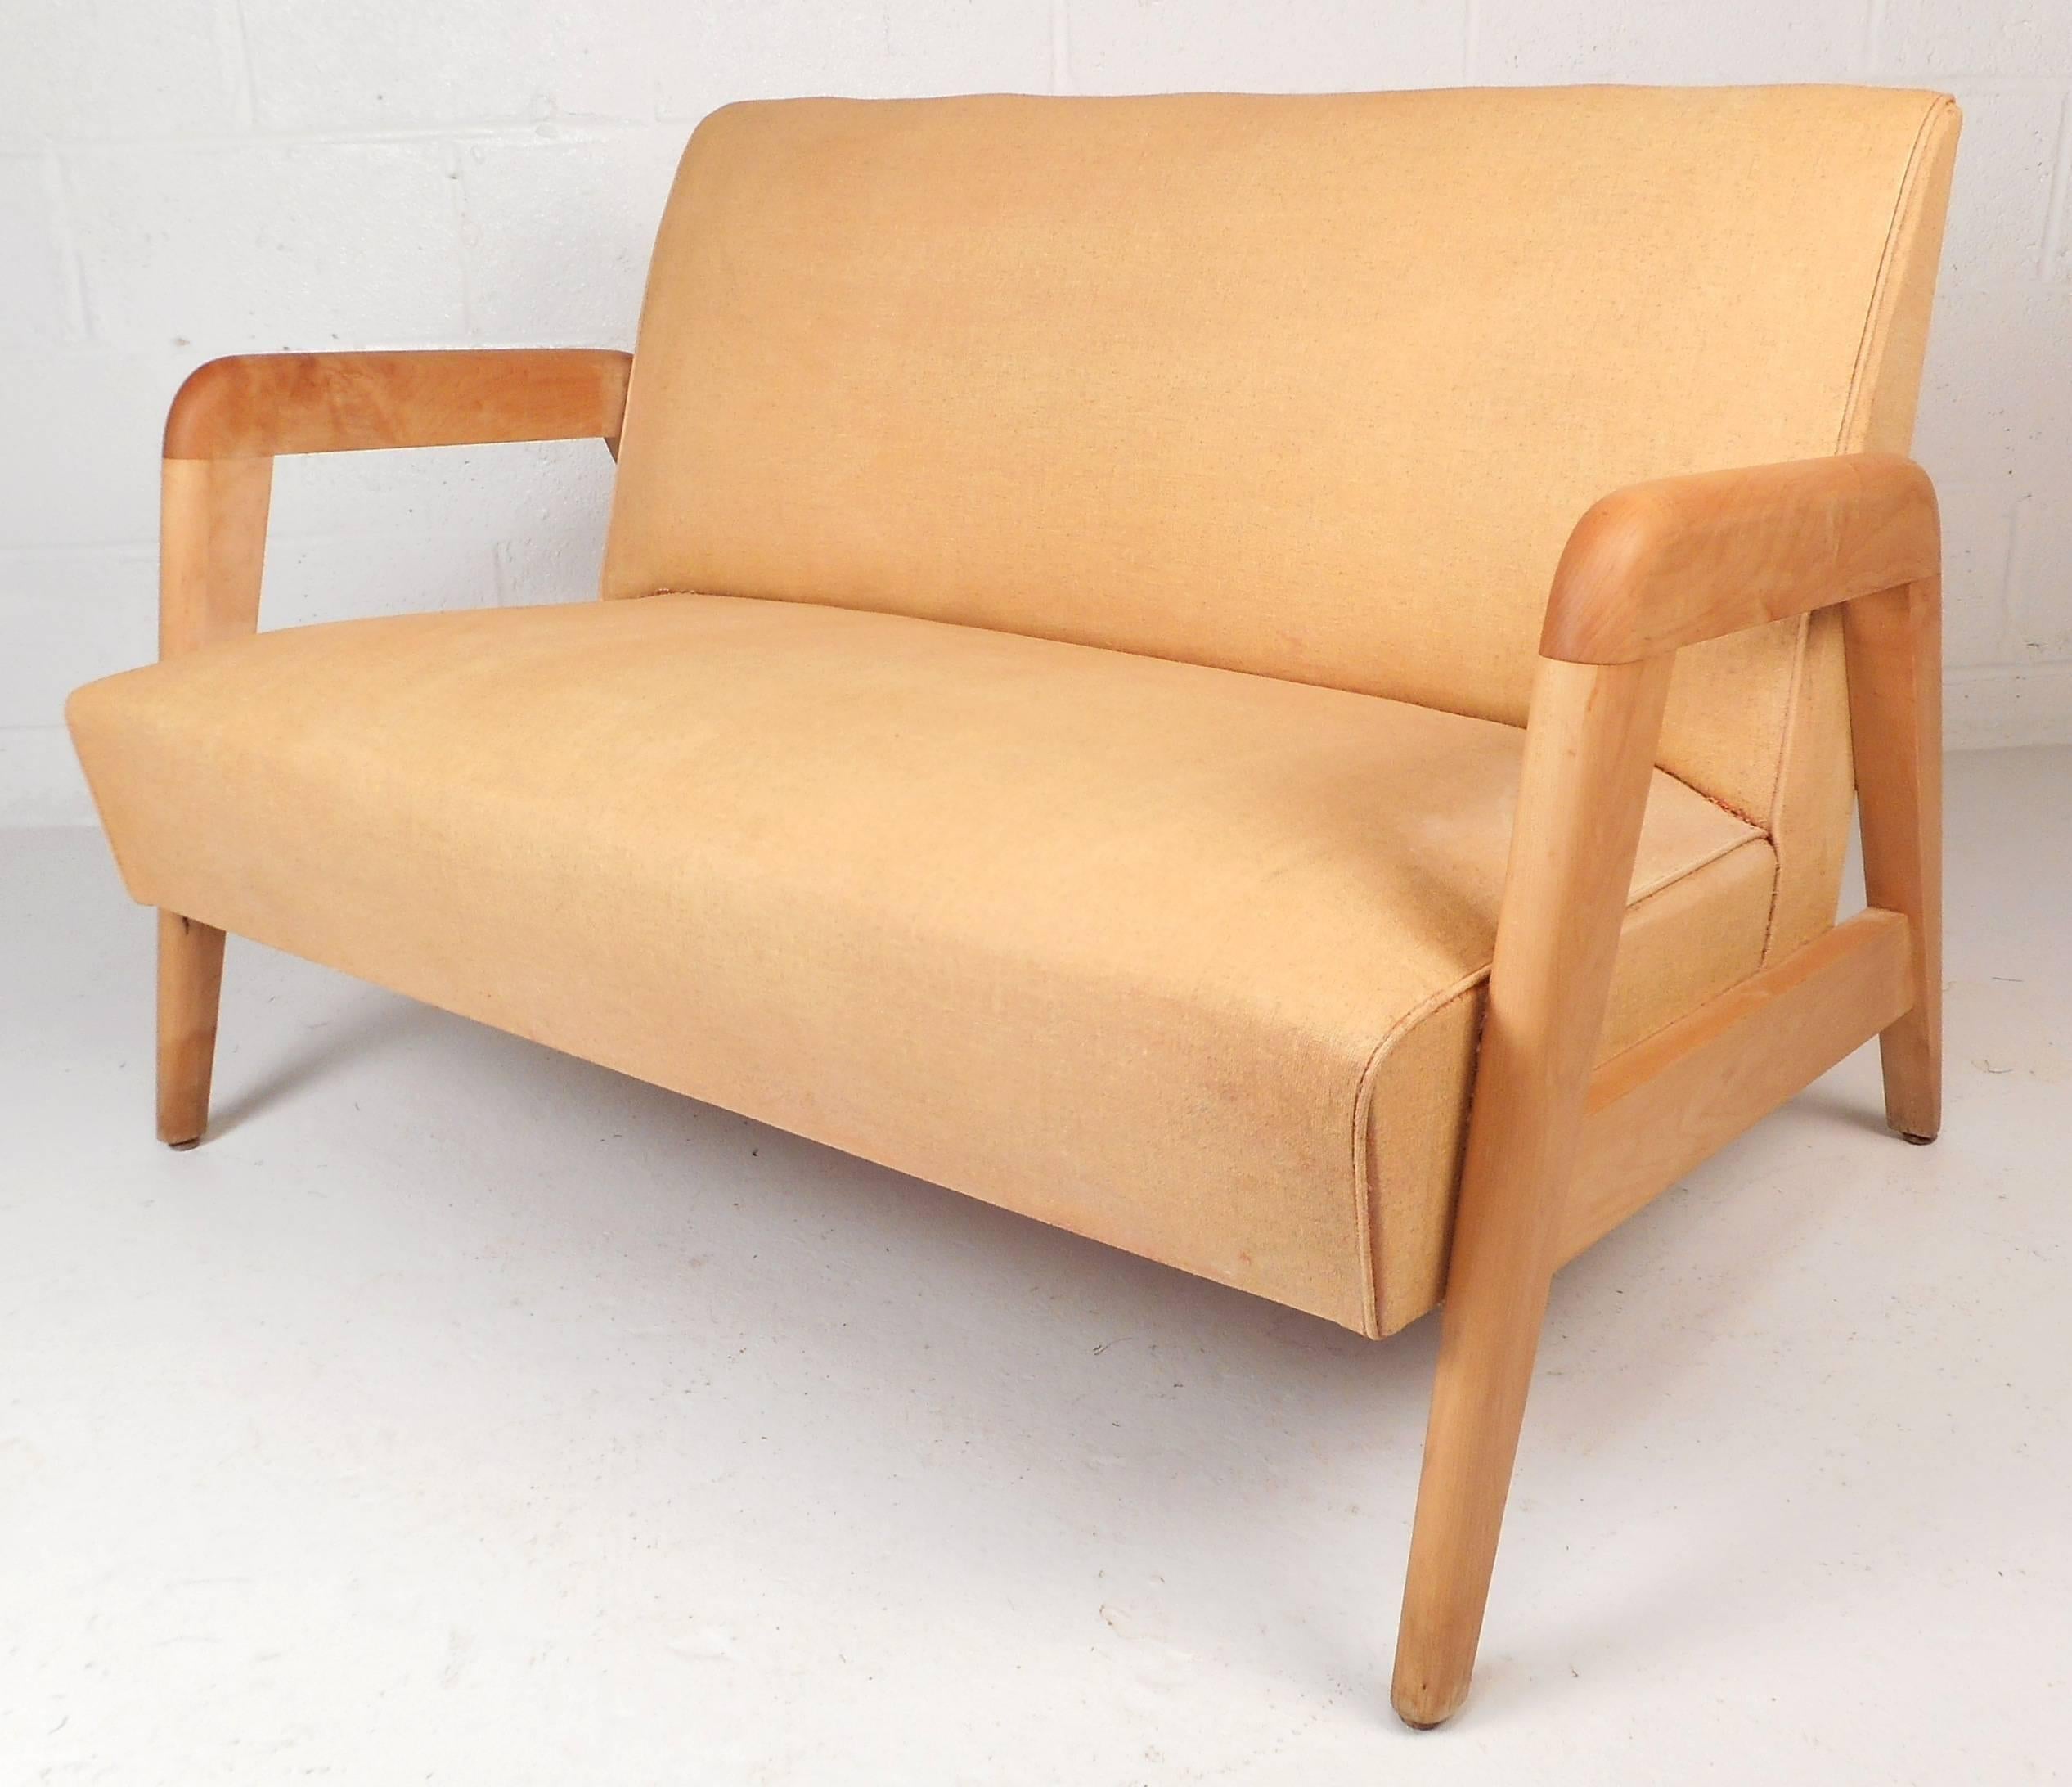 Die drei modernen Stühle im Vintage-Stil bestehen aus zwei Loungesesseln und einem Sofa von Leslie Diamond für Conant Ball. Elegantes Design mit glatten Kanten an den Armlehnen und einzigartig abgewinkelten Beinen. Das Gestell aus massivem Ahornholz